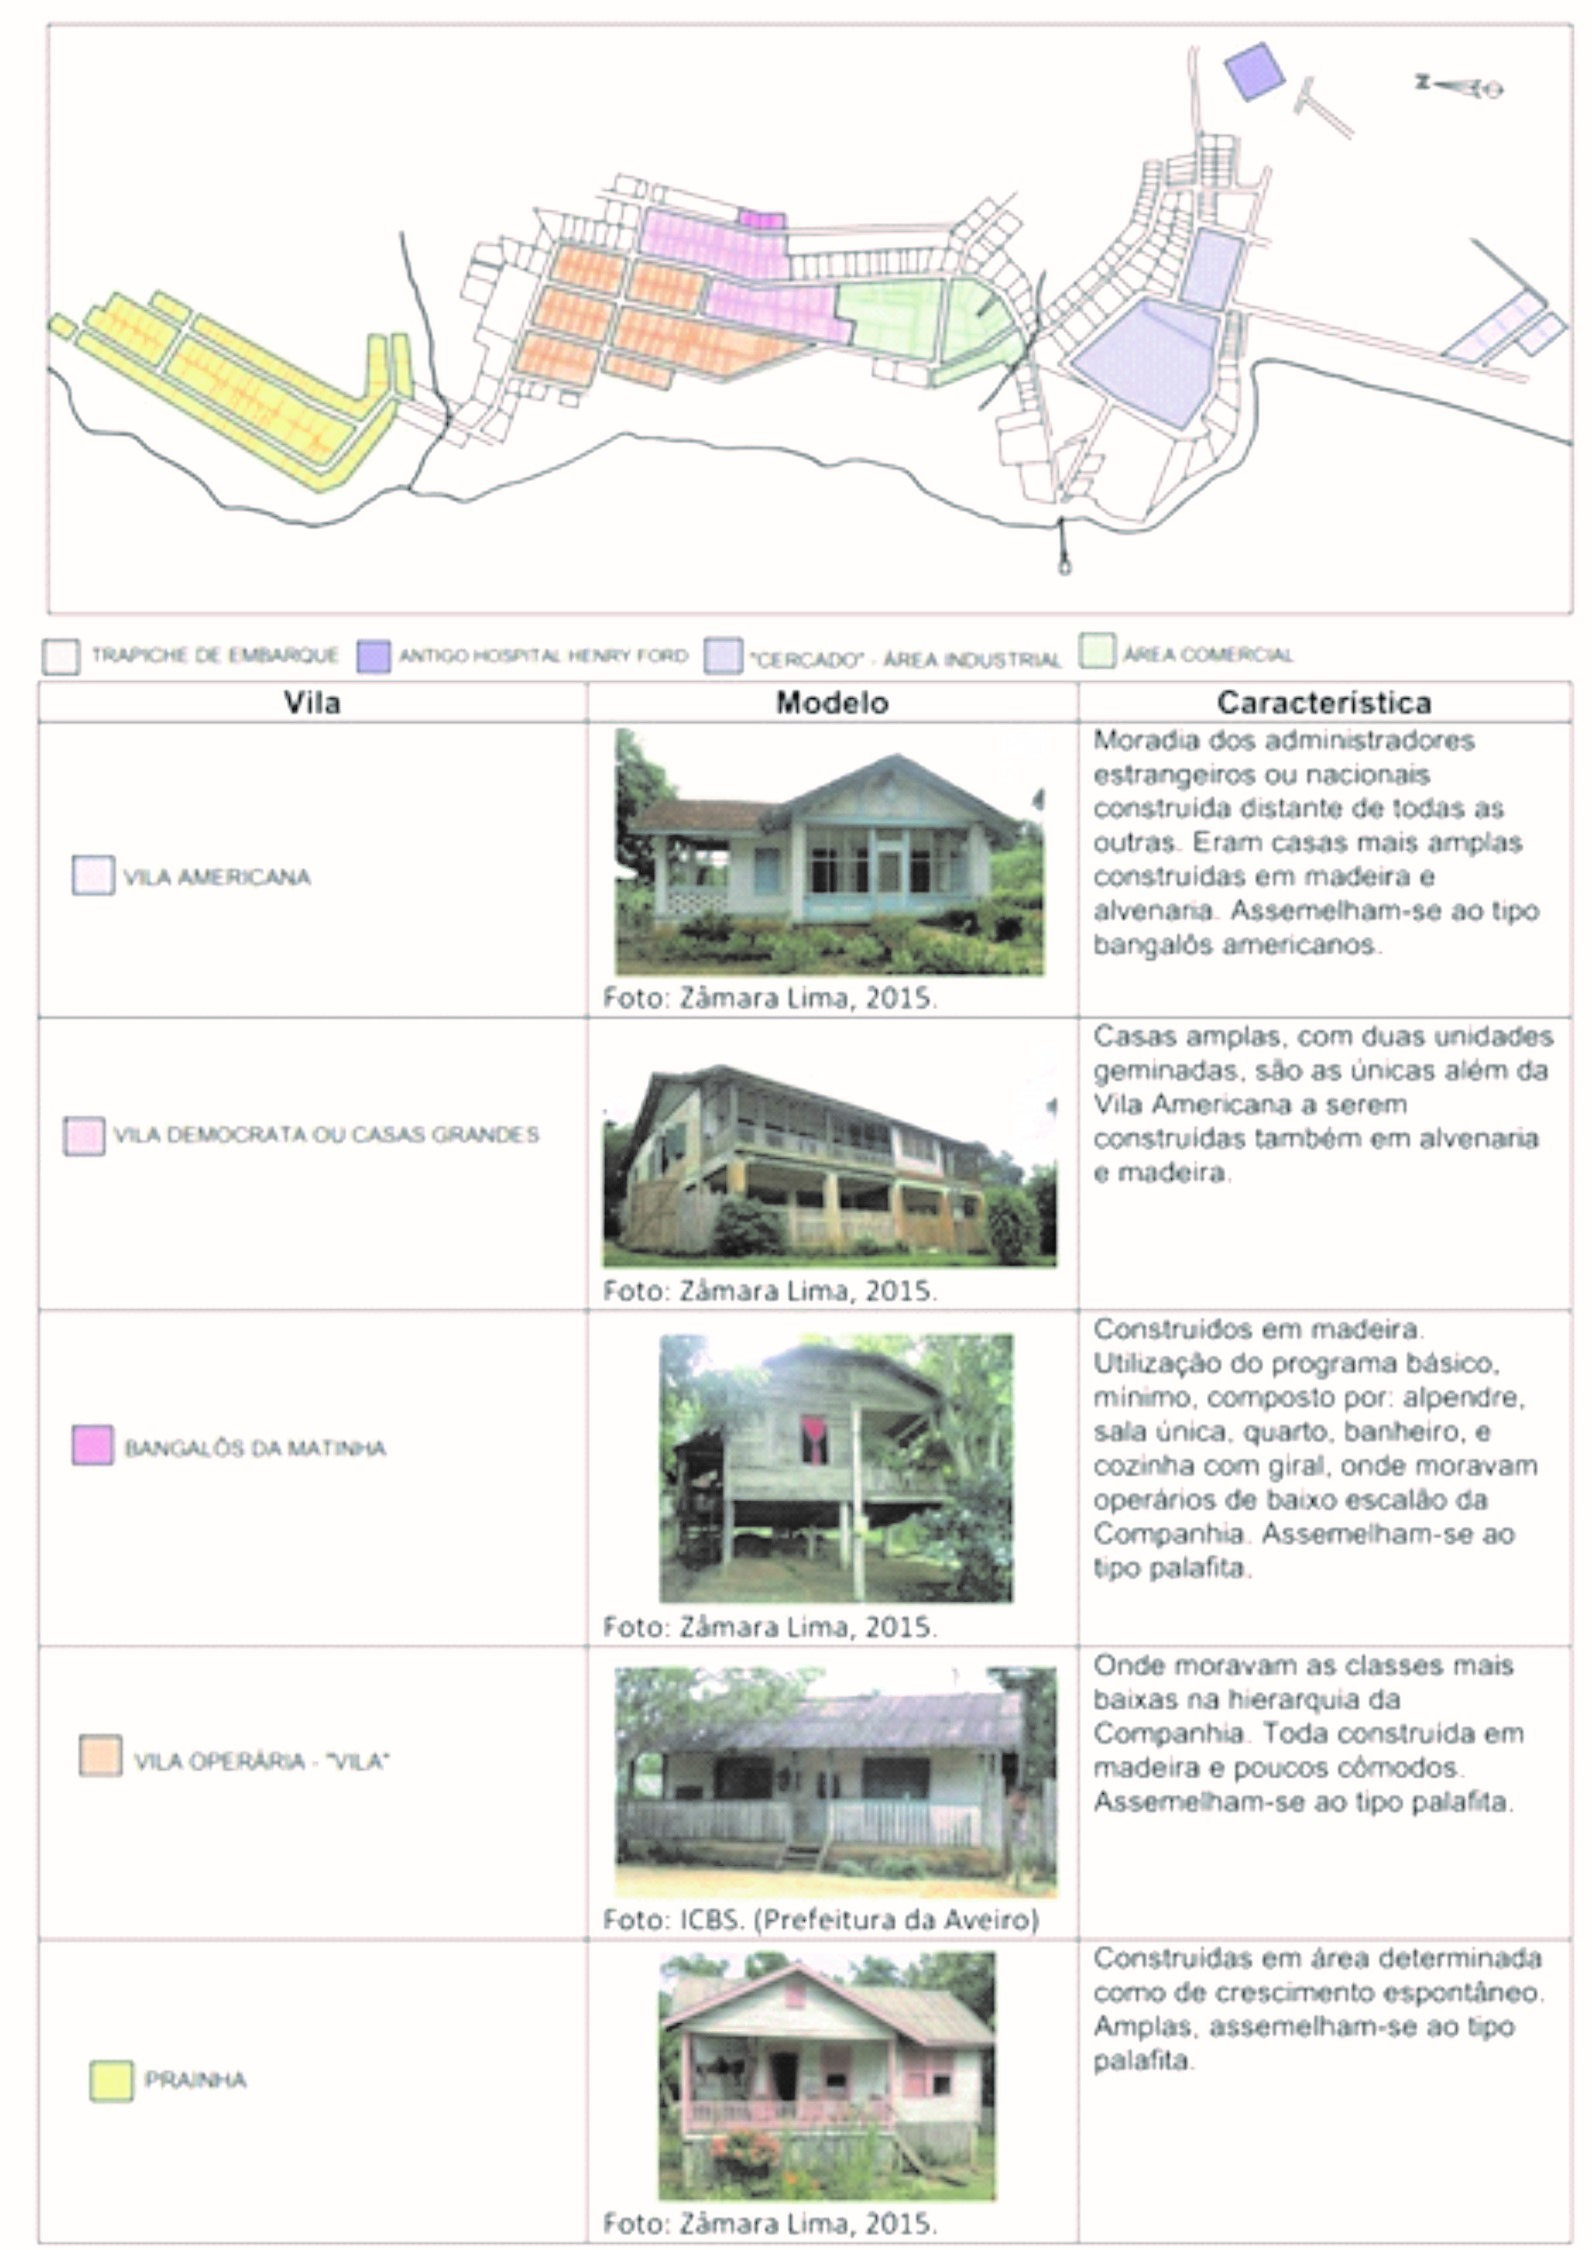 Quadro 1: Planta geral de Fordlândia com demarcação das vilas e seus respectivos modelos e características. Fonte: As autoras.